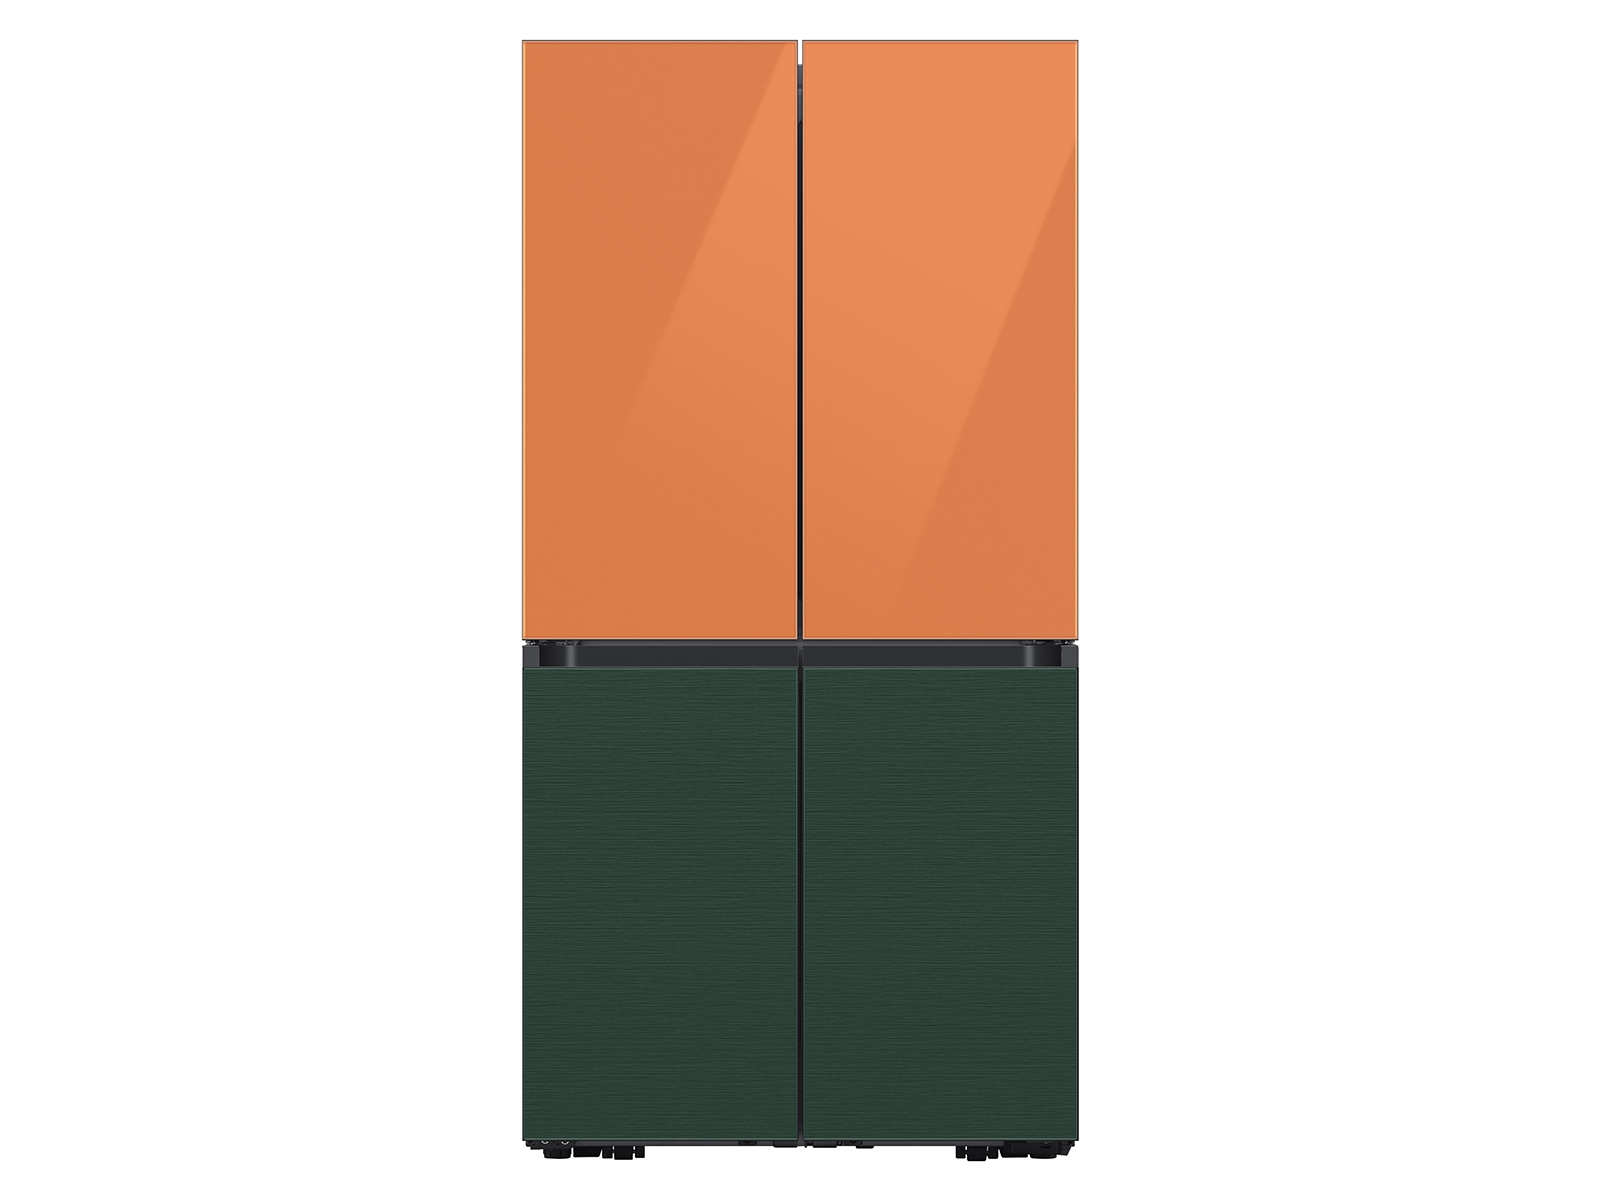 Thumbnail image of Bespoke 4-Door Flex™ Refrigerator Panel in Emerald Green Steel - Bottom Panel